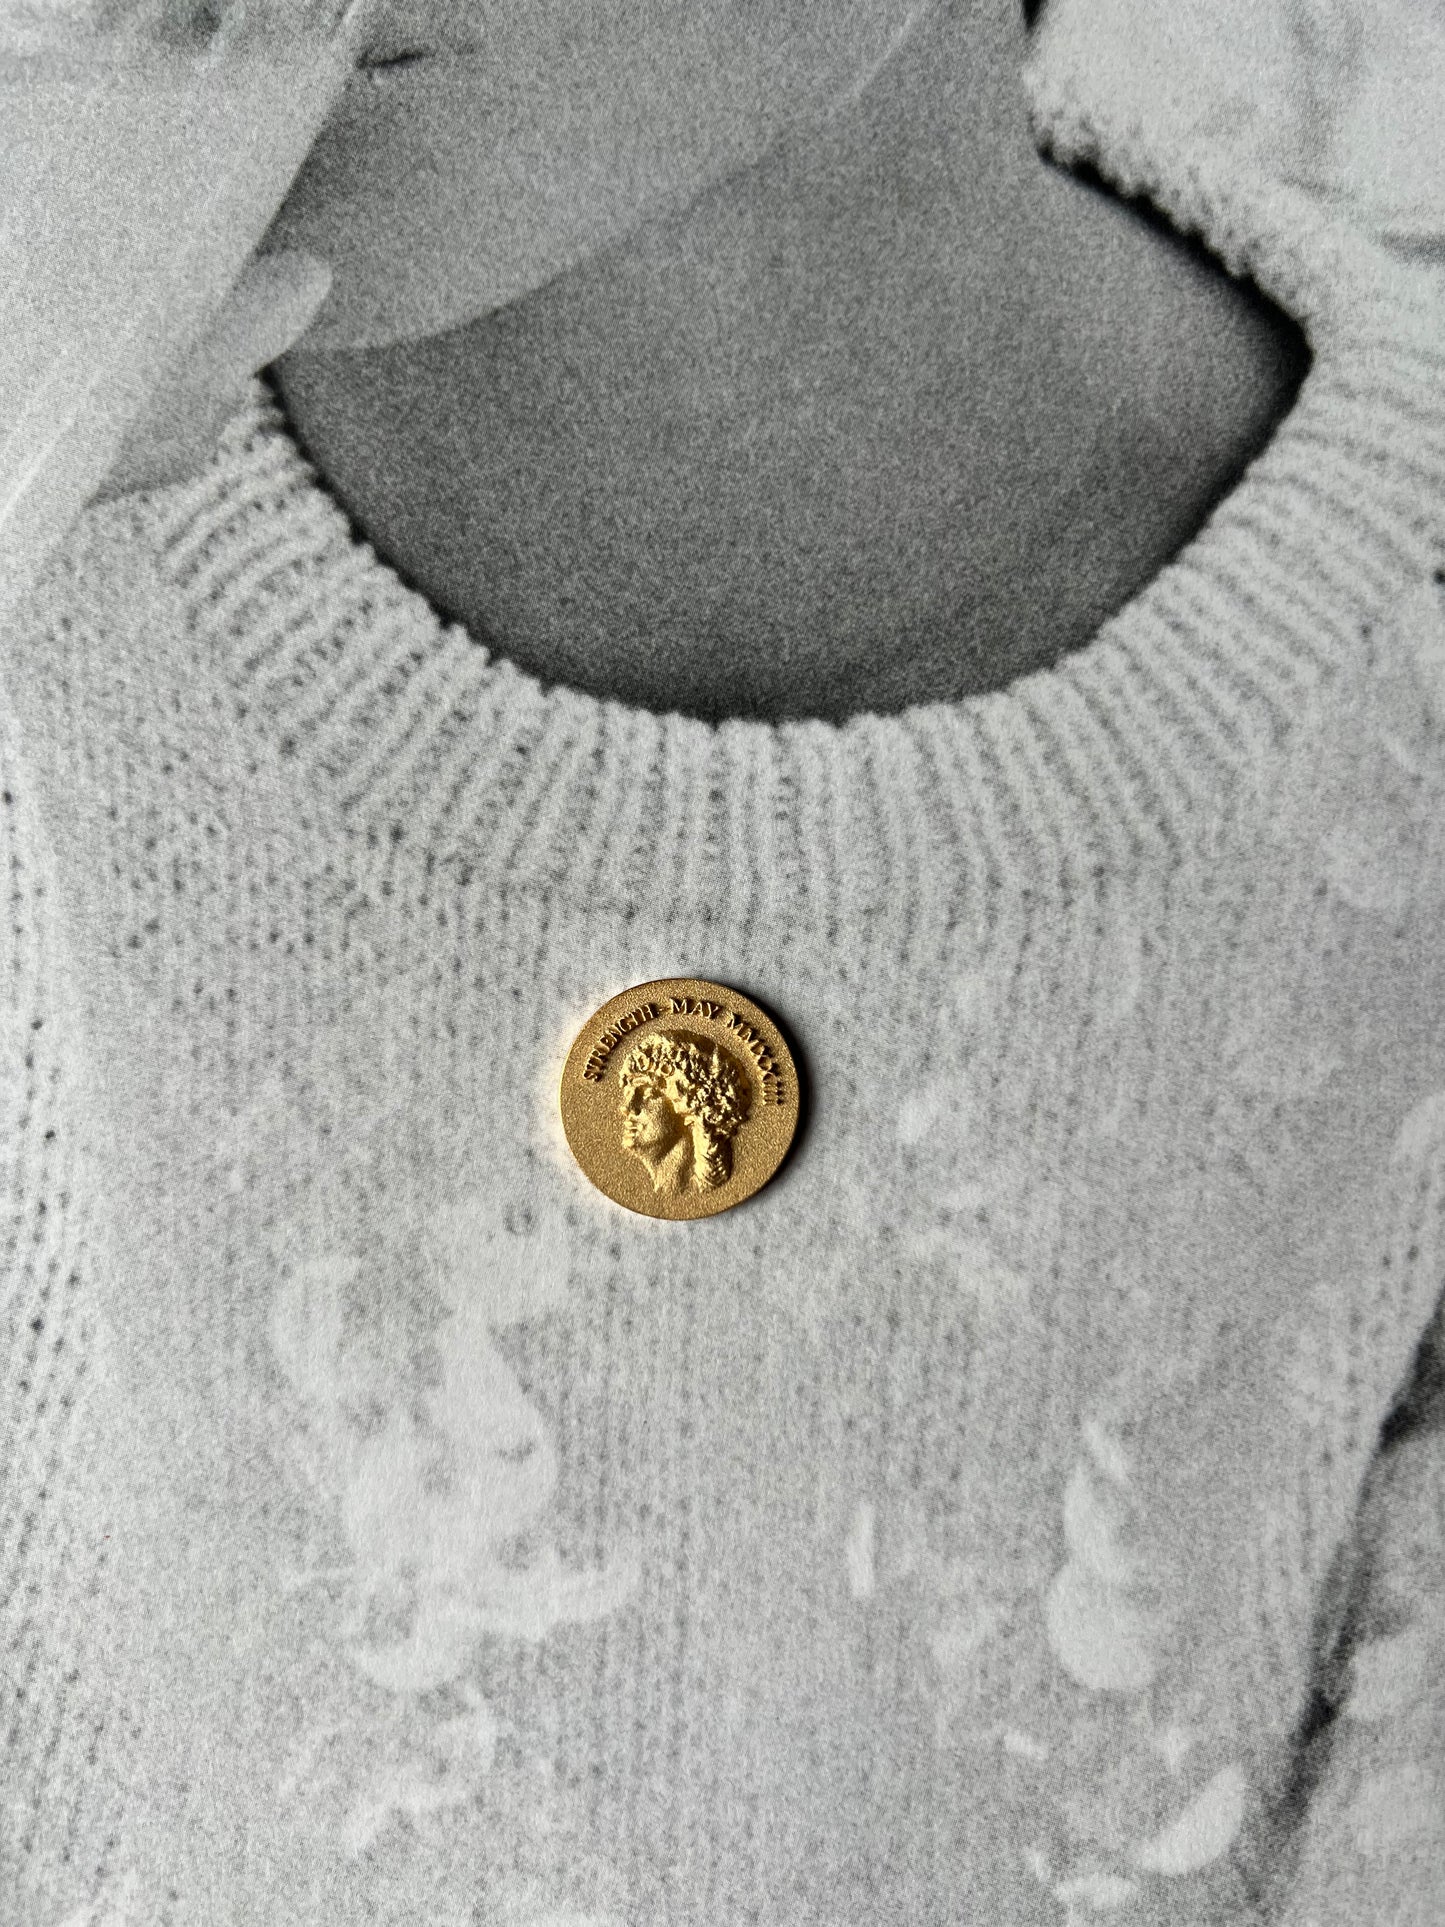 Circe antique coin gold